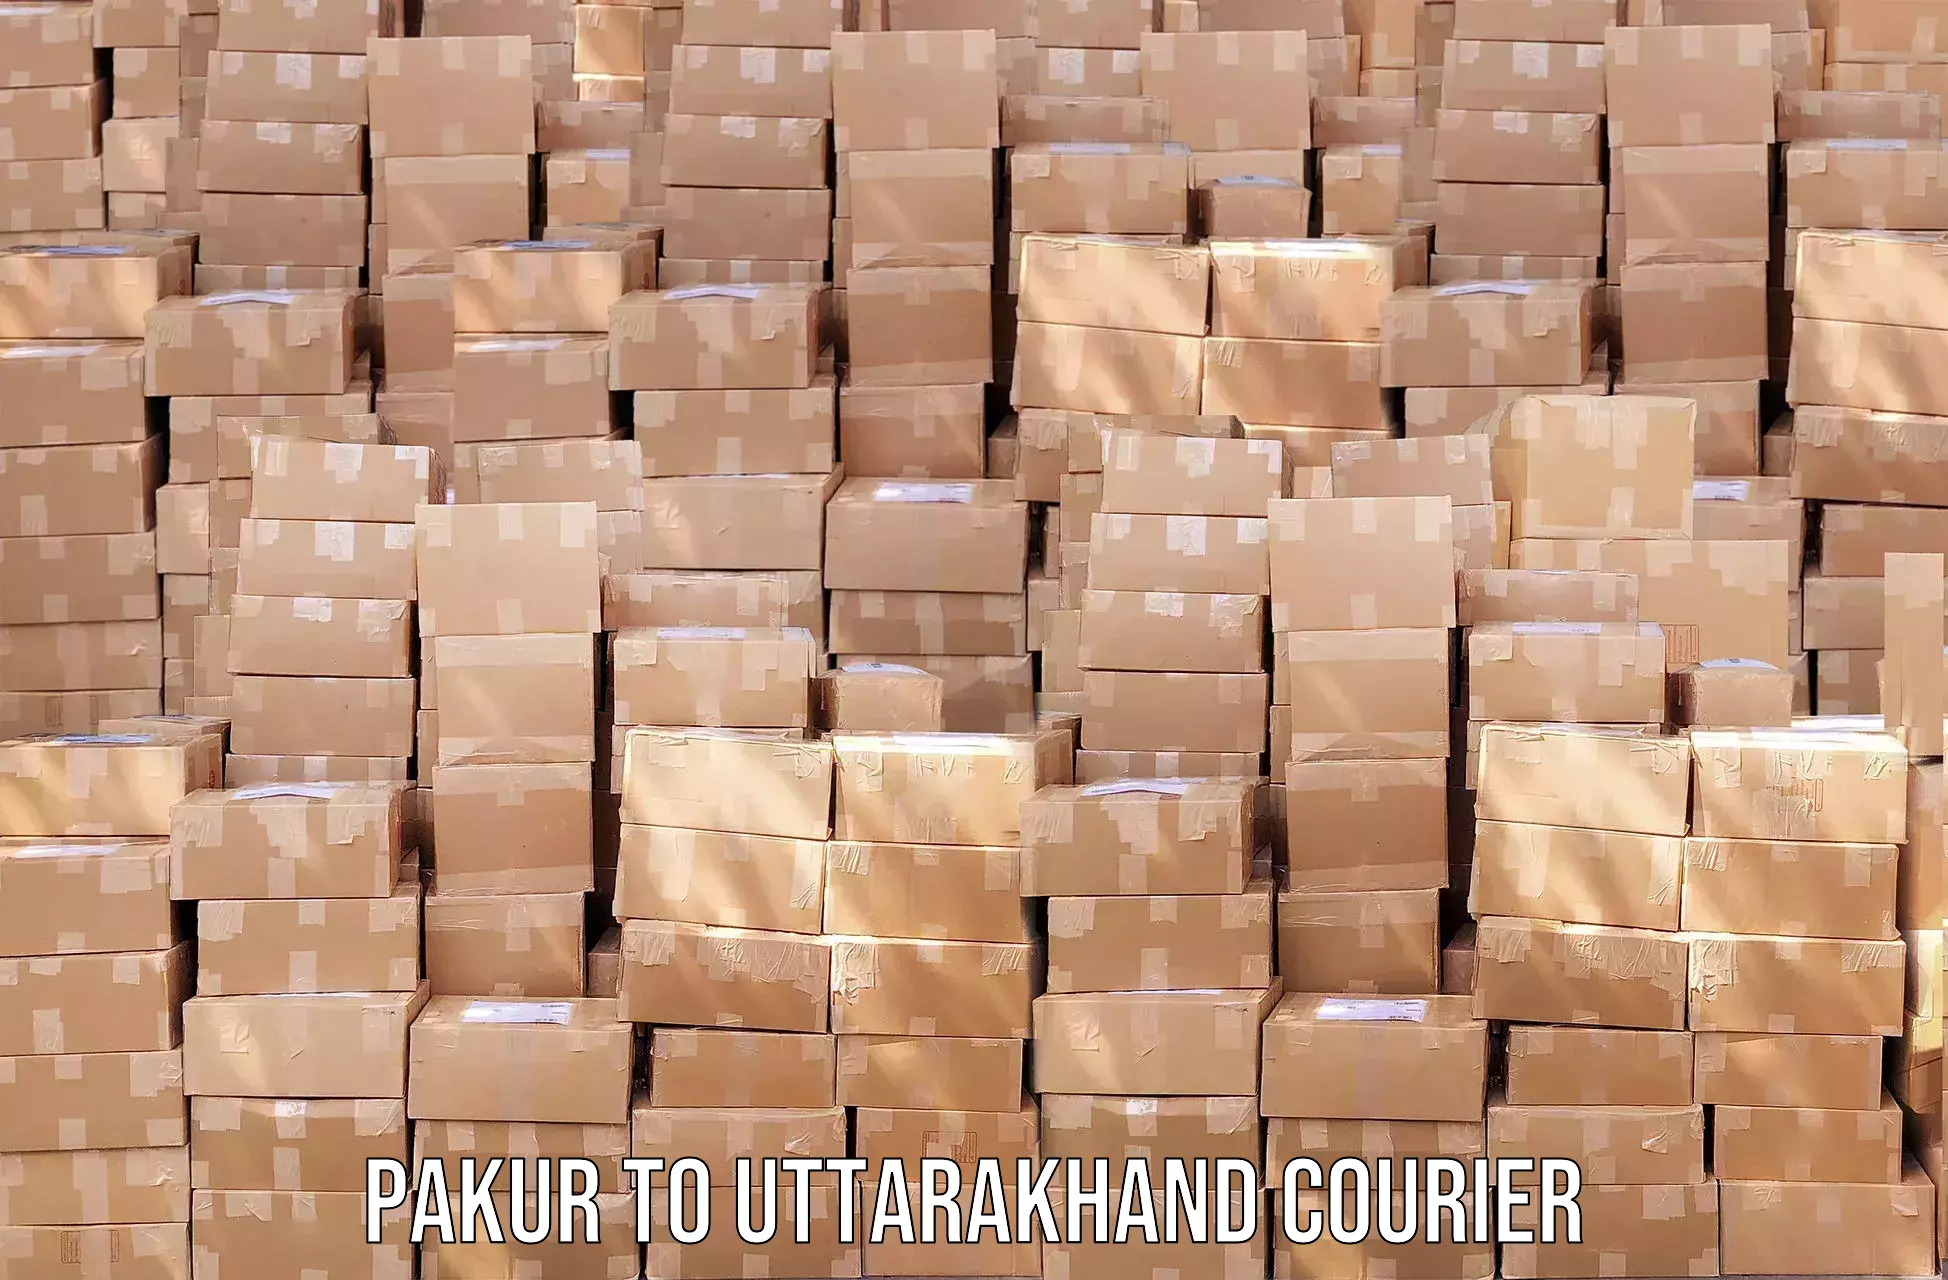 Courier service partnerships Pakur to Kotdwara